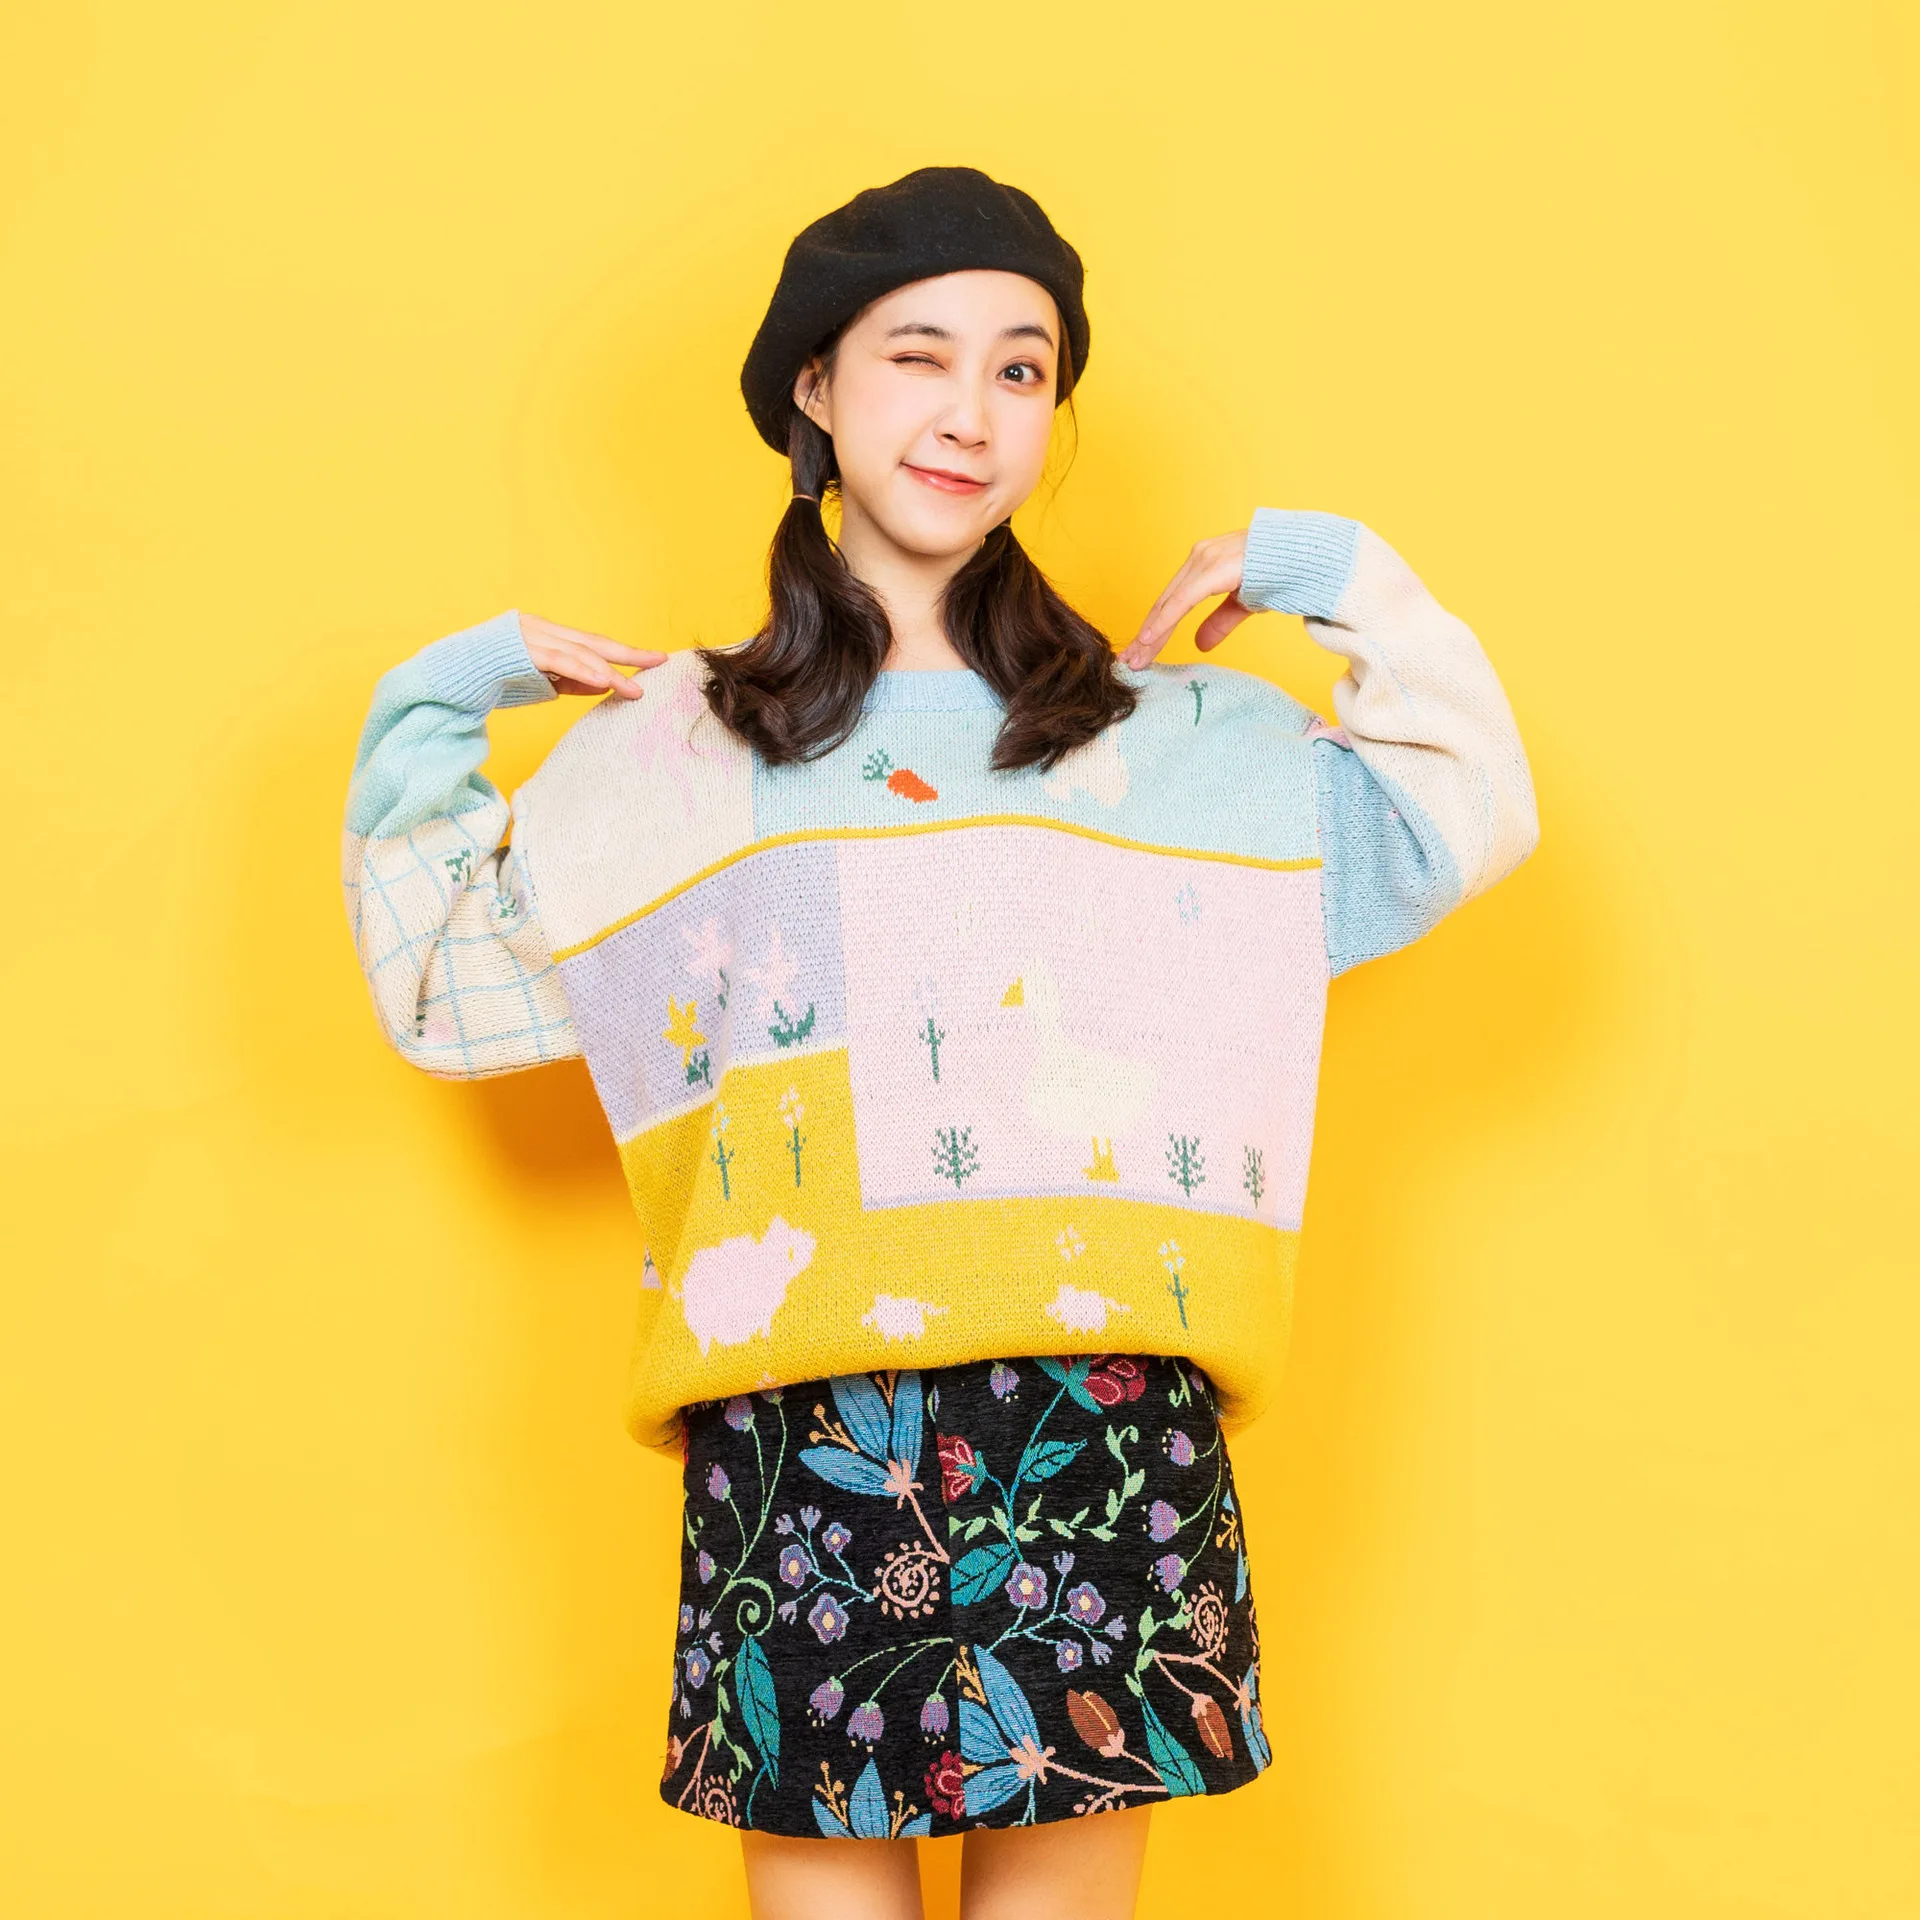 Винтажный дизайн, Женский пуловер шерстяной свитер с круглым вырезом, с цветным блоком, вязаный джемпер, топ для осени и зимы